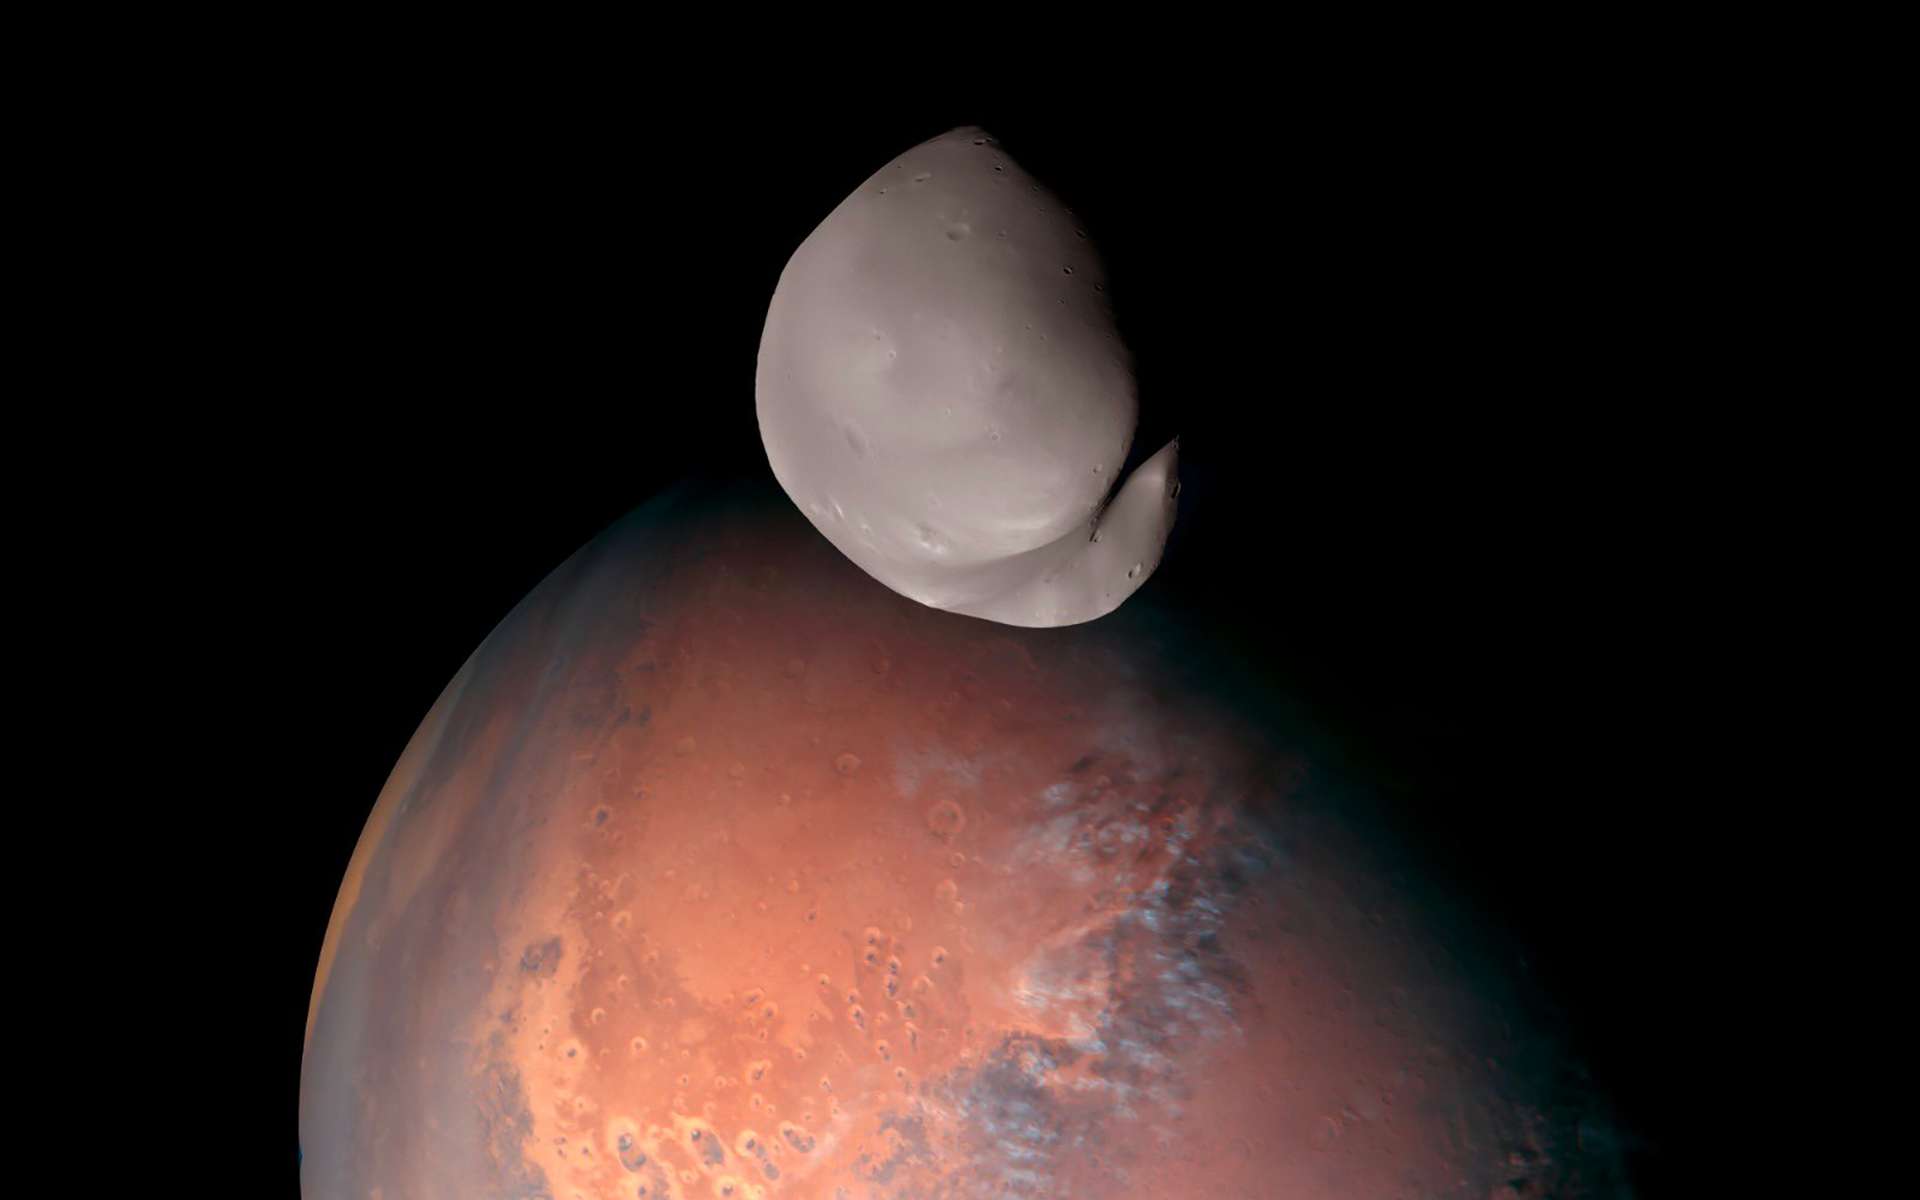 Un regard inédit sur la lune de Mars Deimos et ses origines mystérieuses